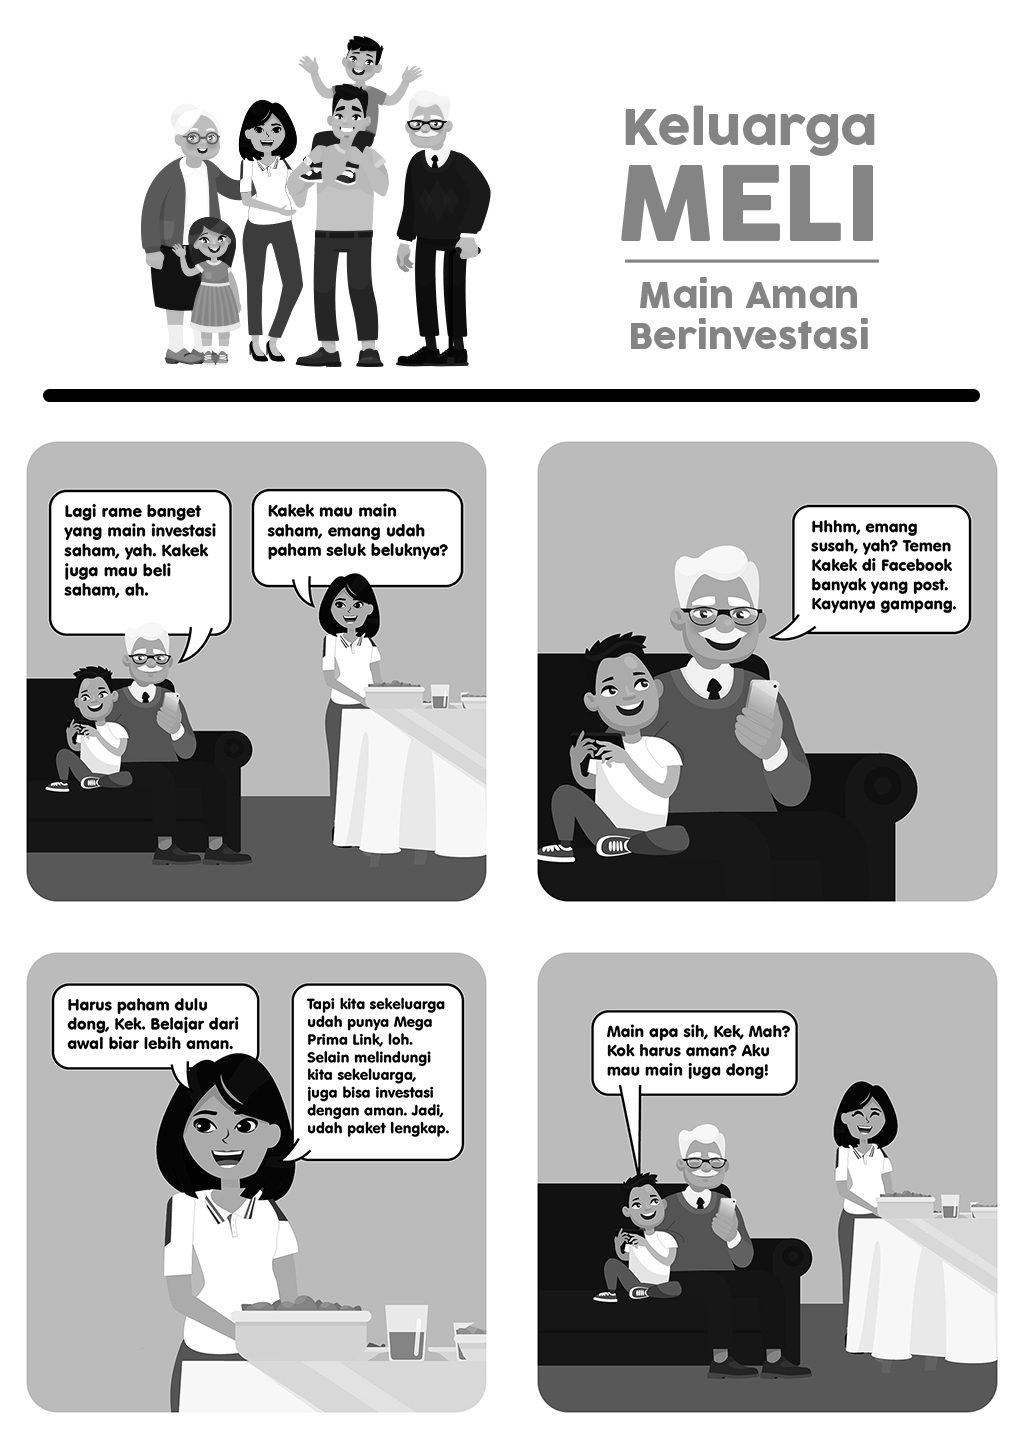 Komik Strip: Keluarga Meli - Main Aman Berinvestasi